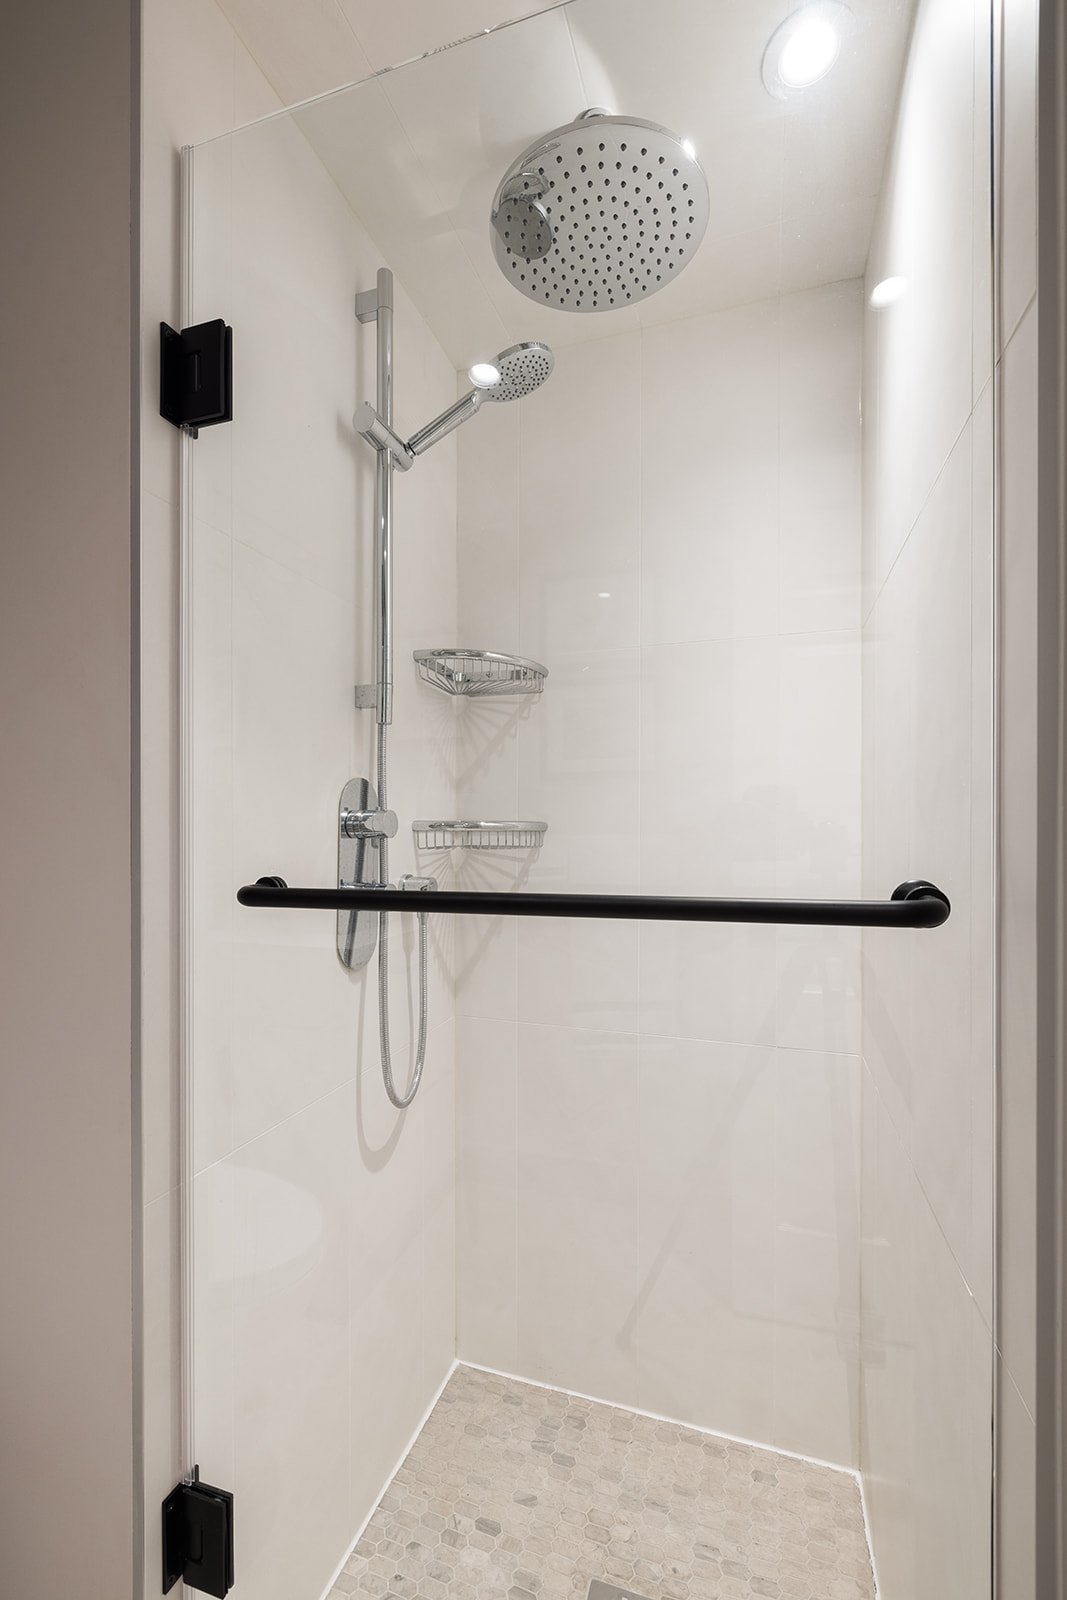 Glass shower door with stainless steel shower fixtures in Toronto condo bathroom renovation